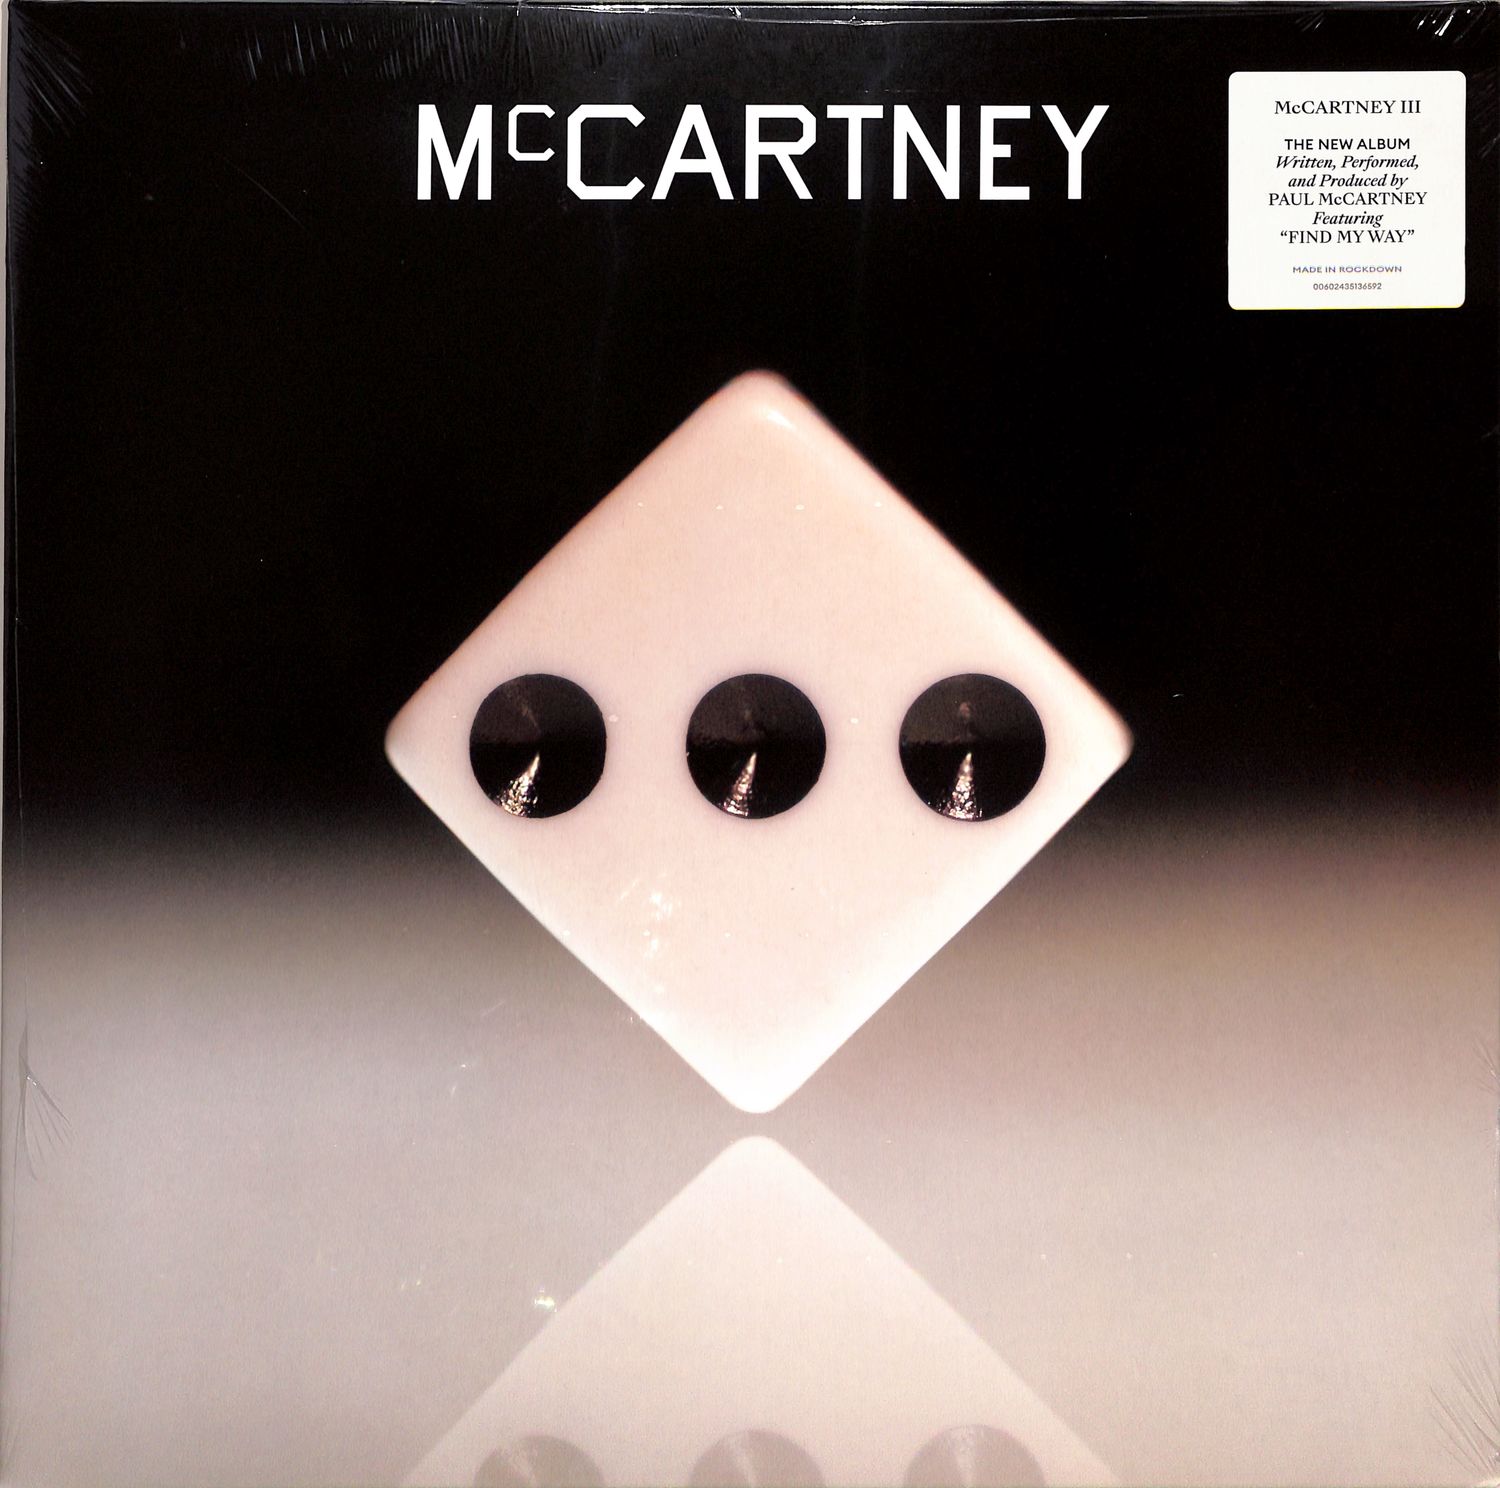 Paul McCartney - MCCARTNEY III 